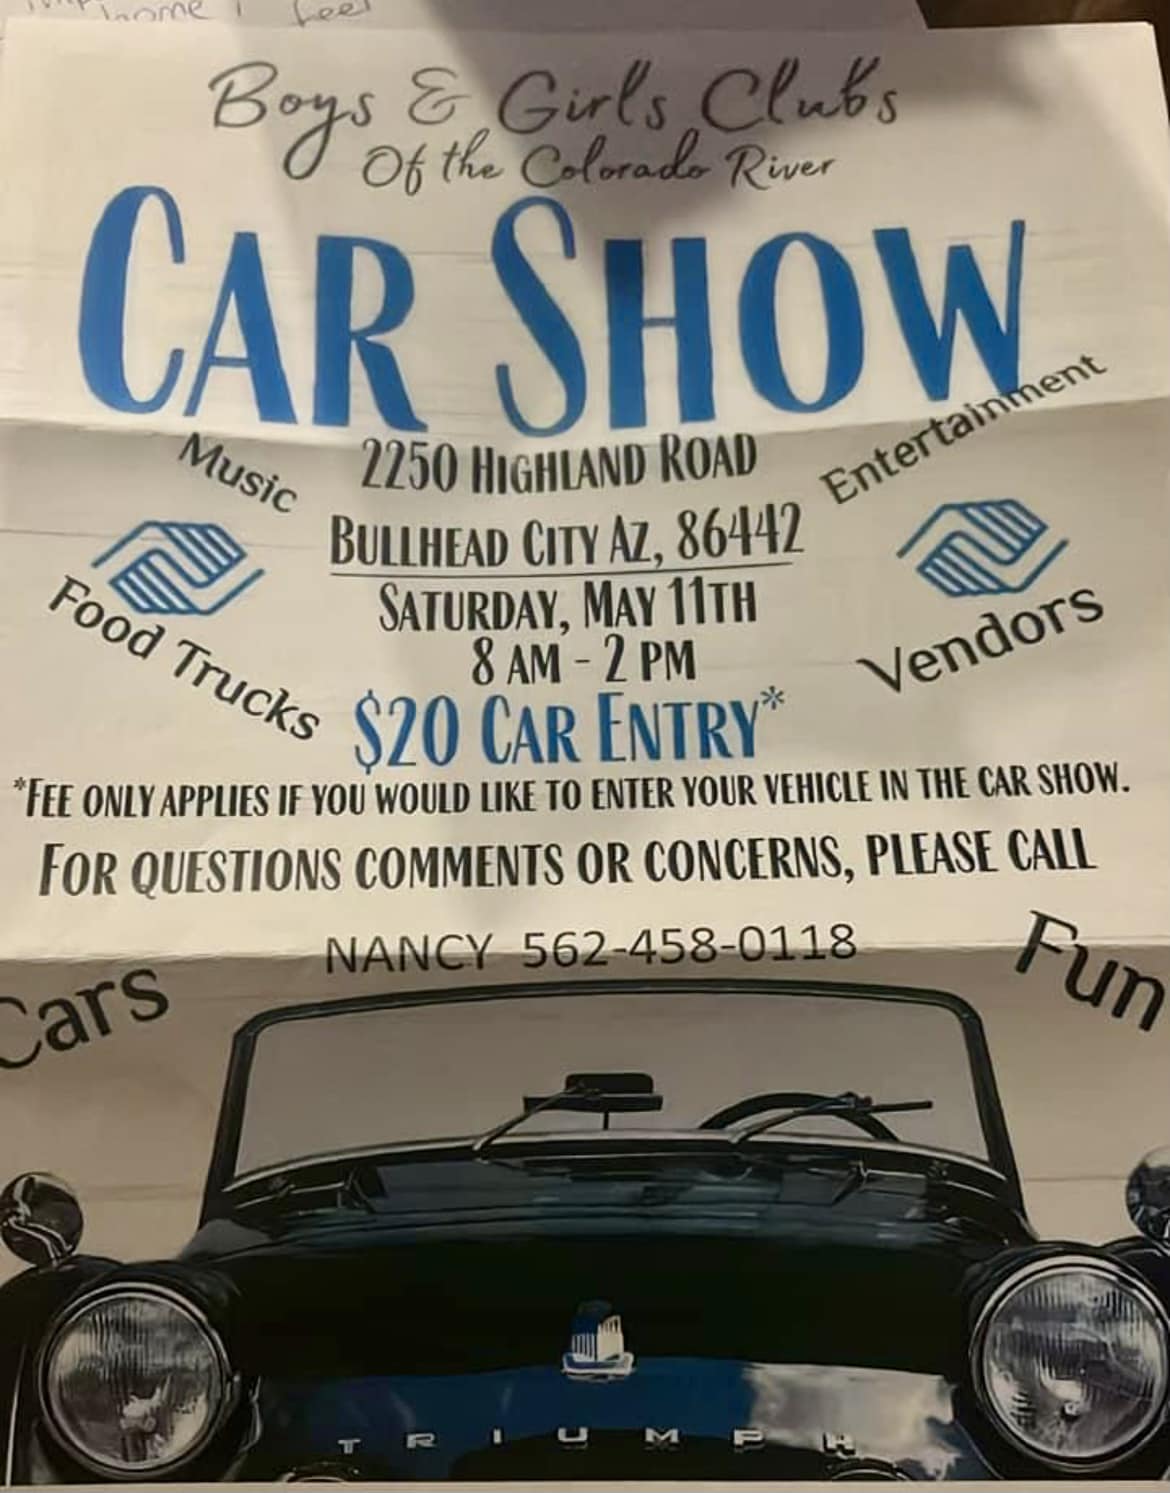 Boys & Girls Club's Car Show